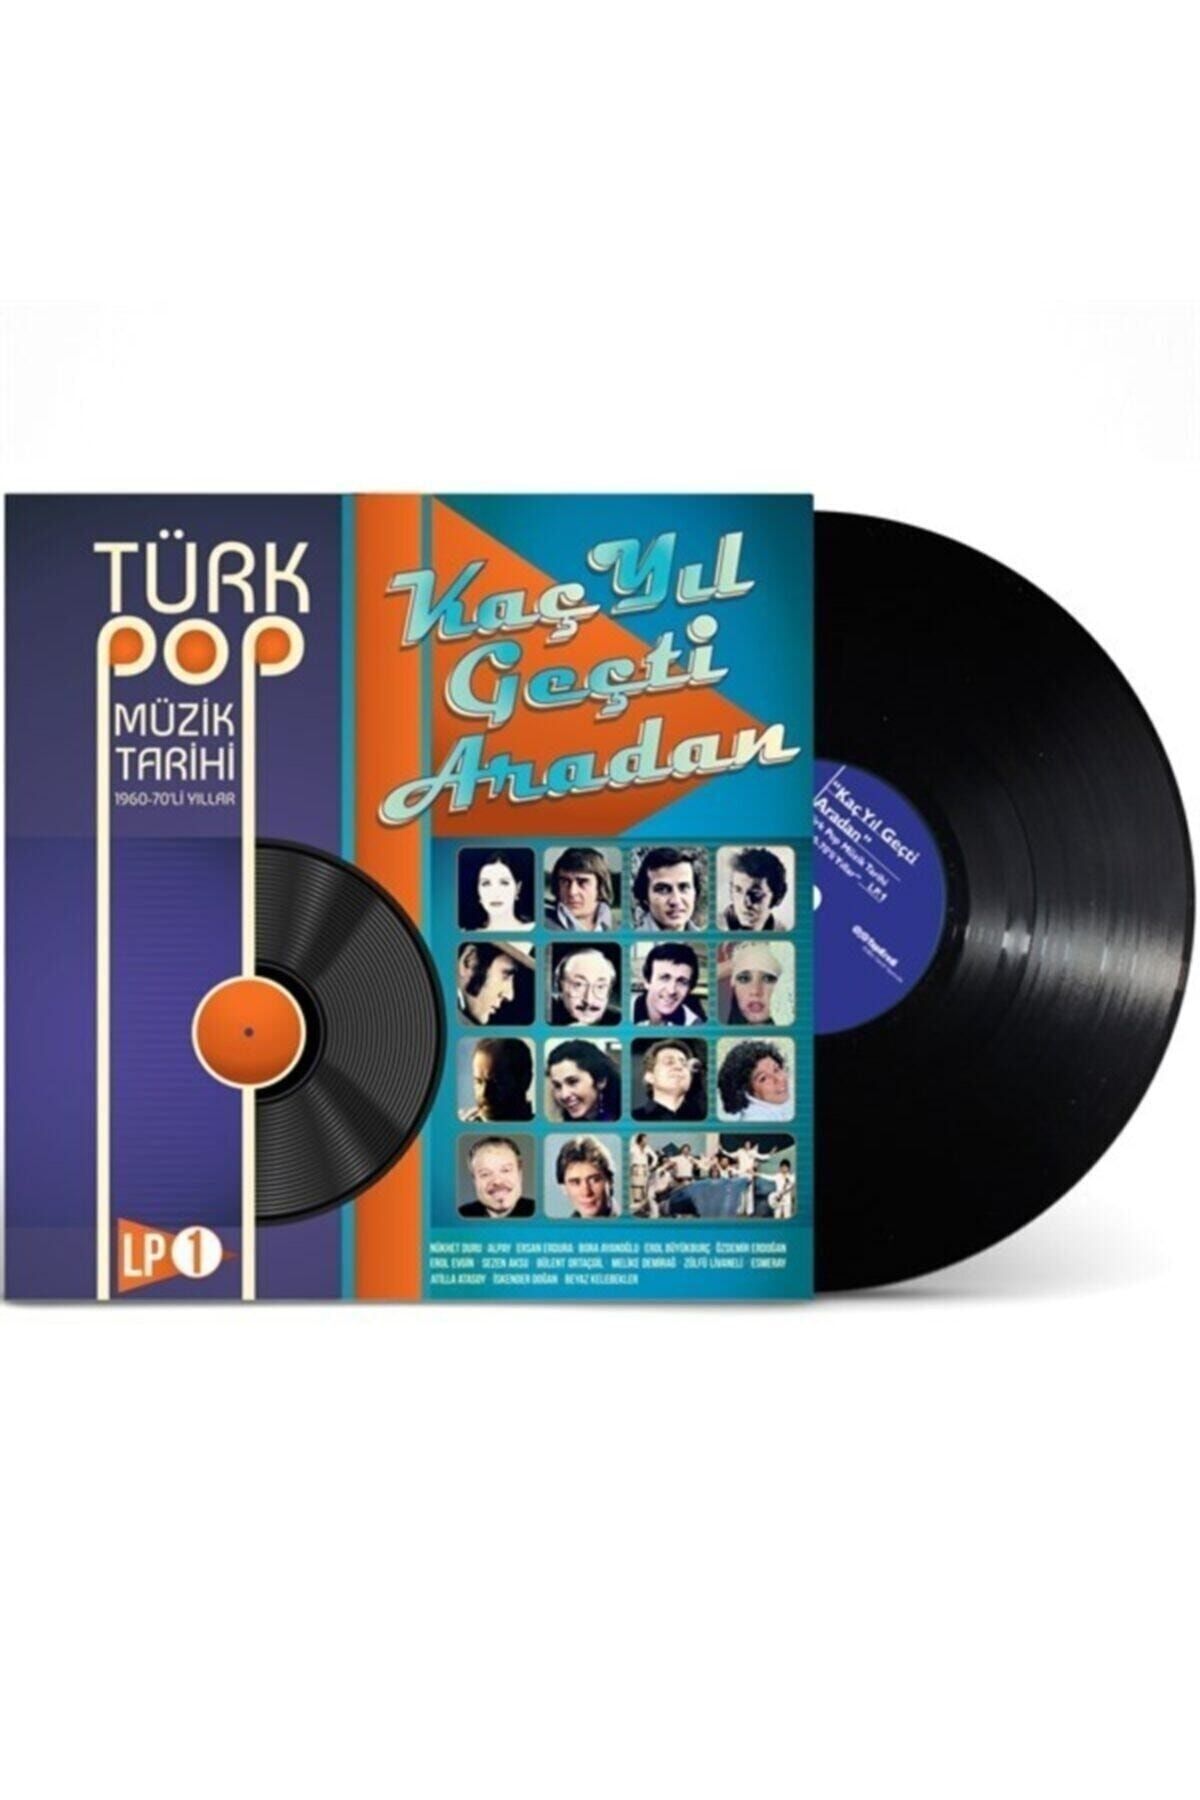 plakmarketi Plak - Türk Pop Müzik Tarihi / 1960-70'lı Yıllar – Vol:1 (ÇEŞİTLİ SANATÇILAR)